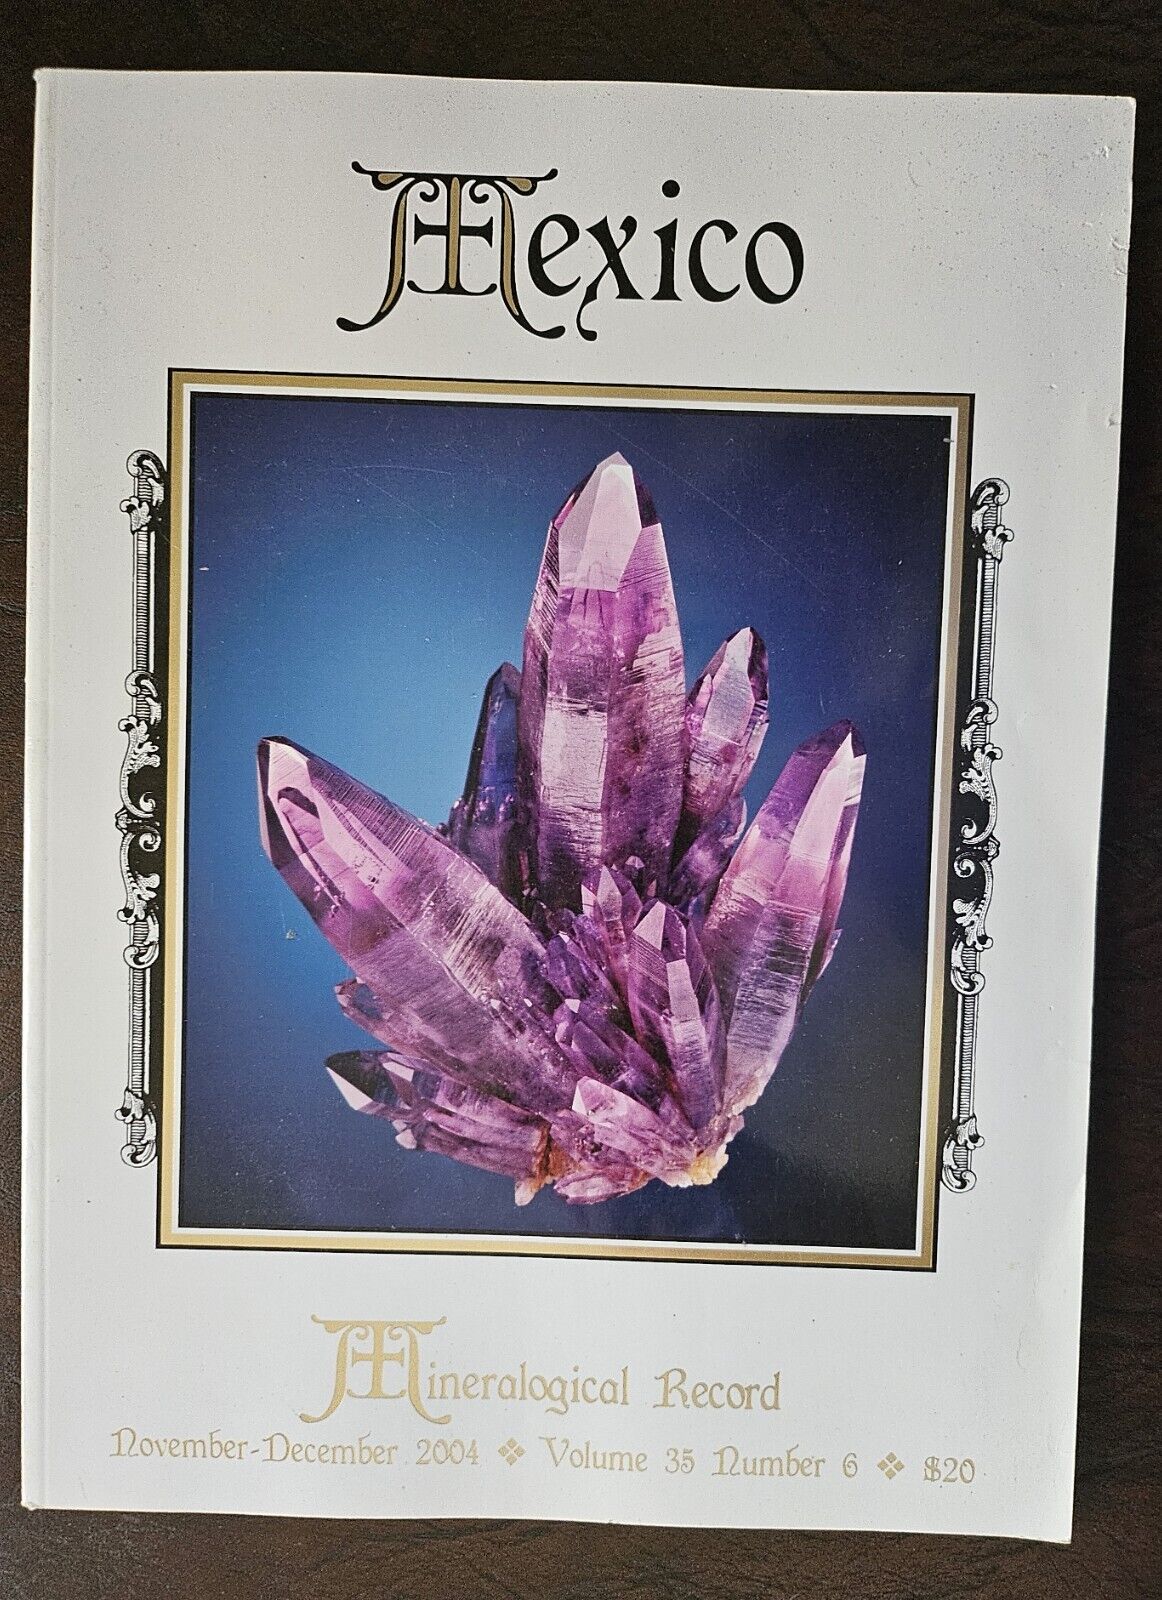 Mineralogical Record Vol. 35, No. 6, 2004